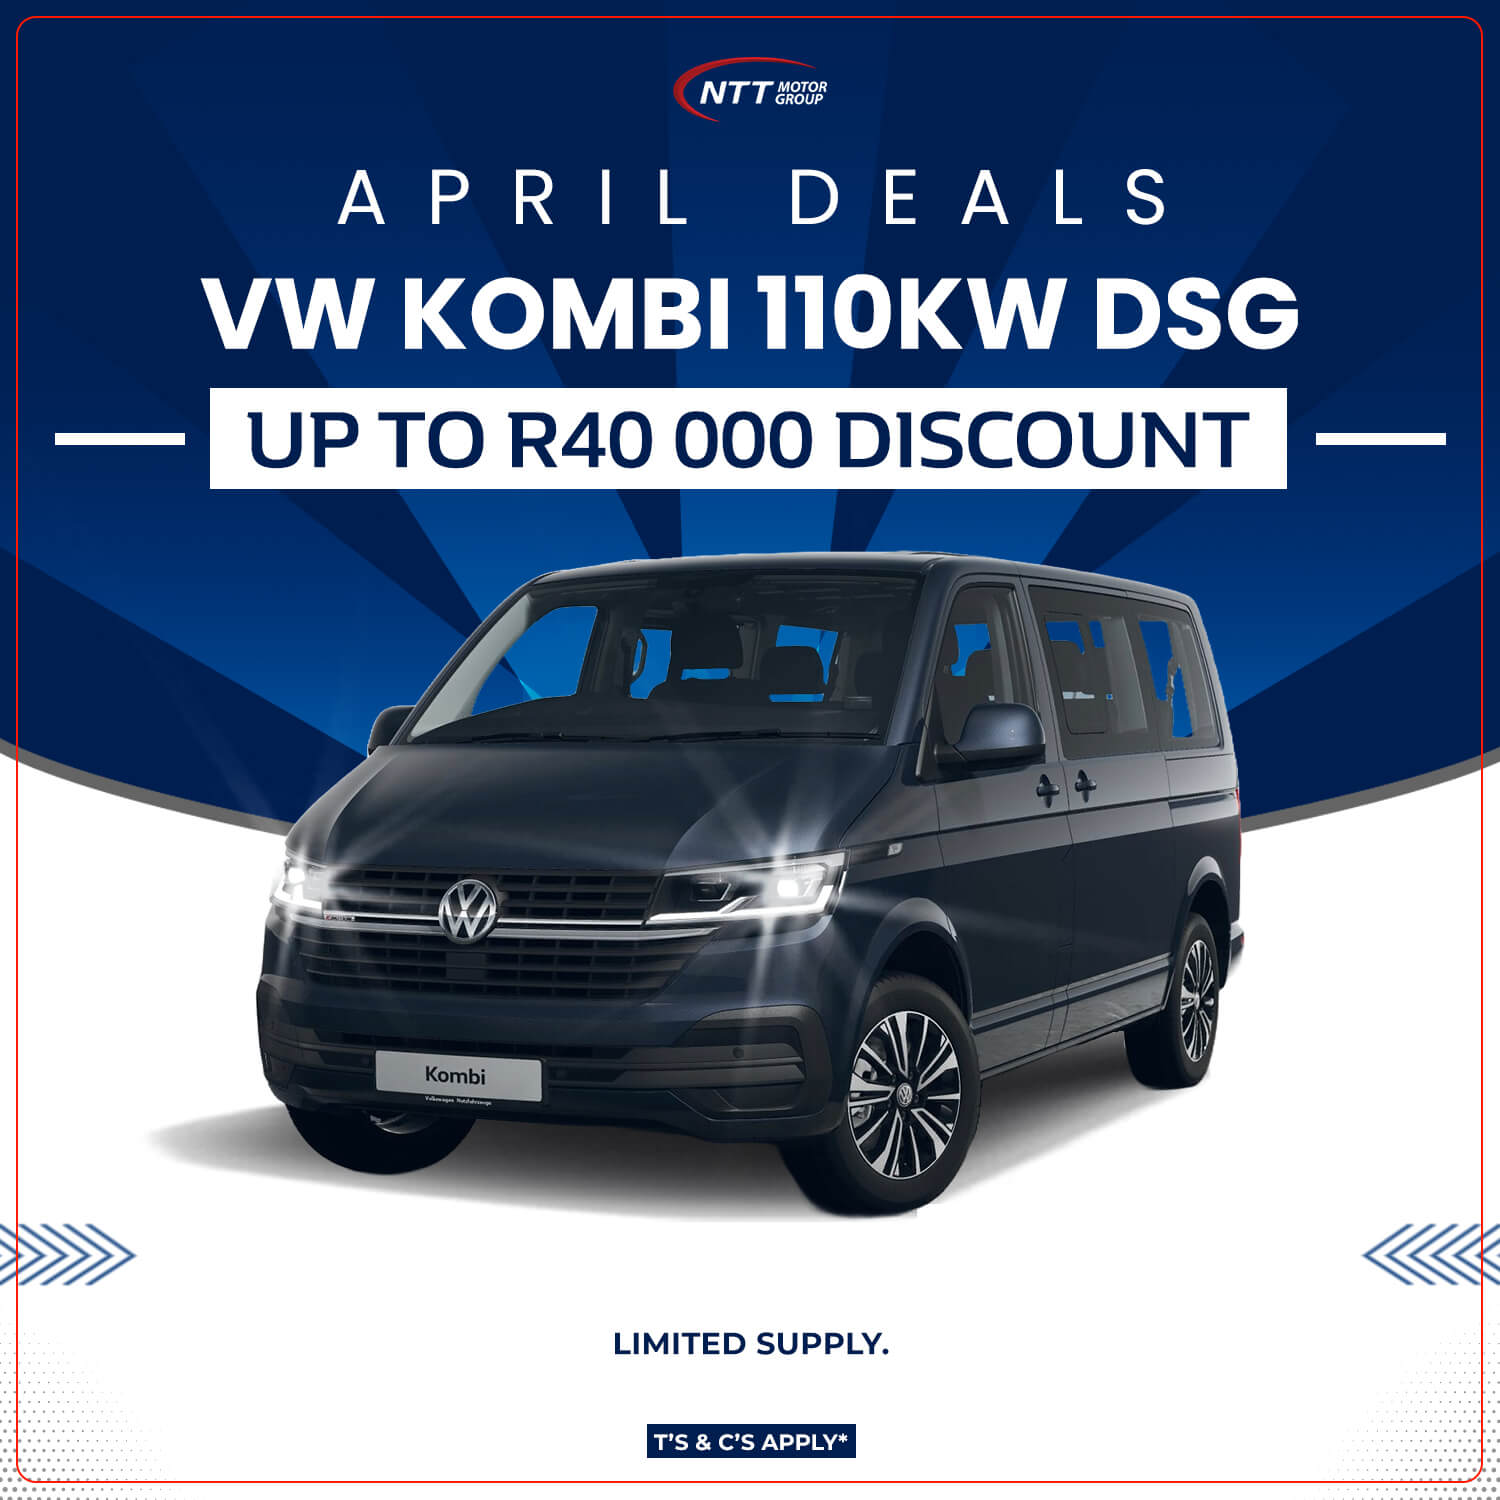 VW KOMBI 110KW DSG - NTT Motor Group - Cars for Sale in South Africa